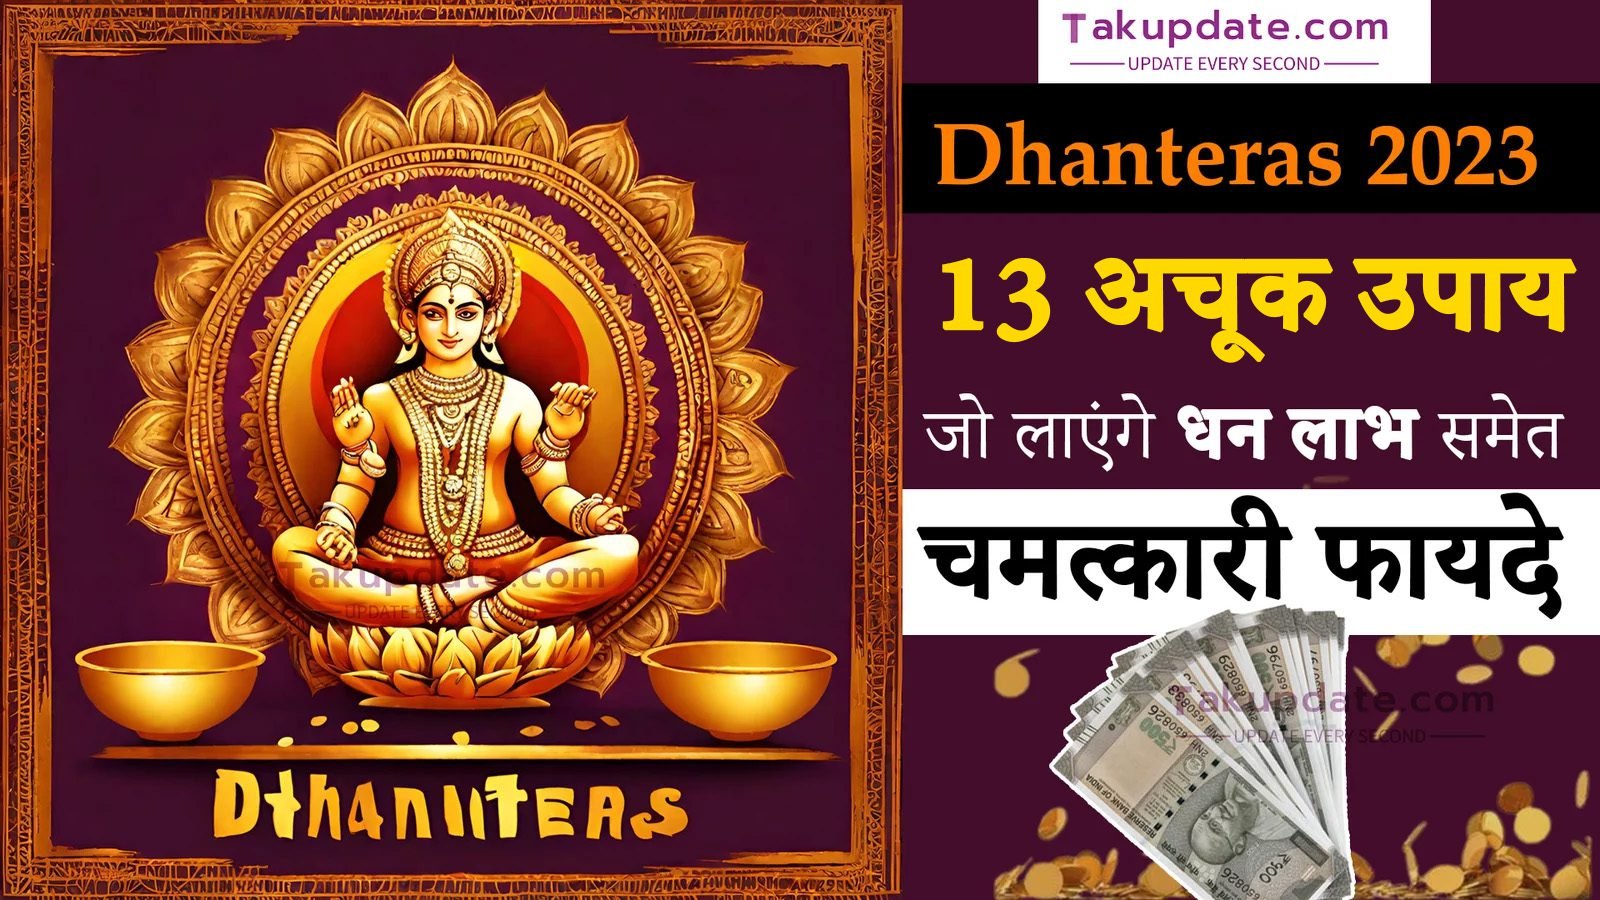 धनतेरस के दिन करना न भूलें ये 13 अचूक उपाय: Dhanteras 2023